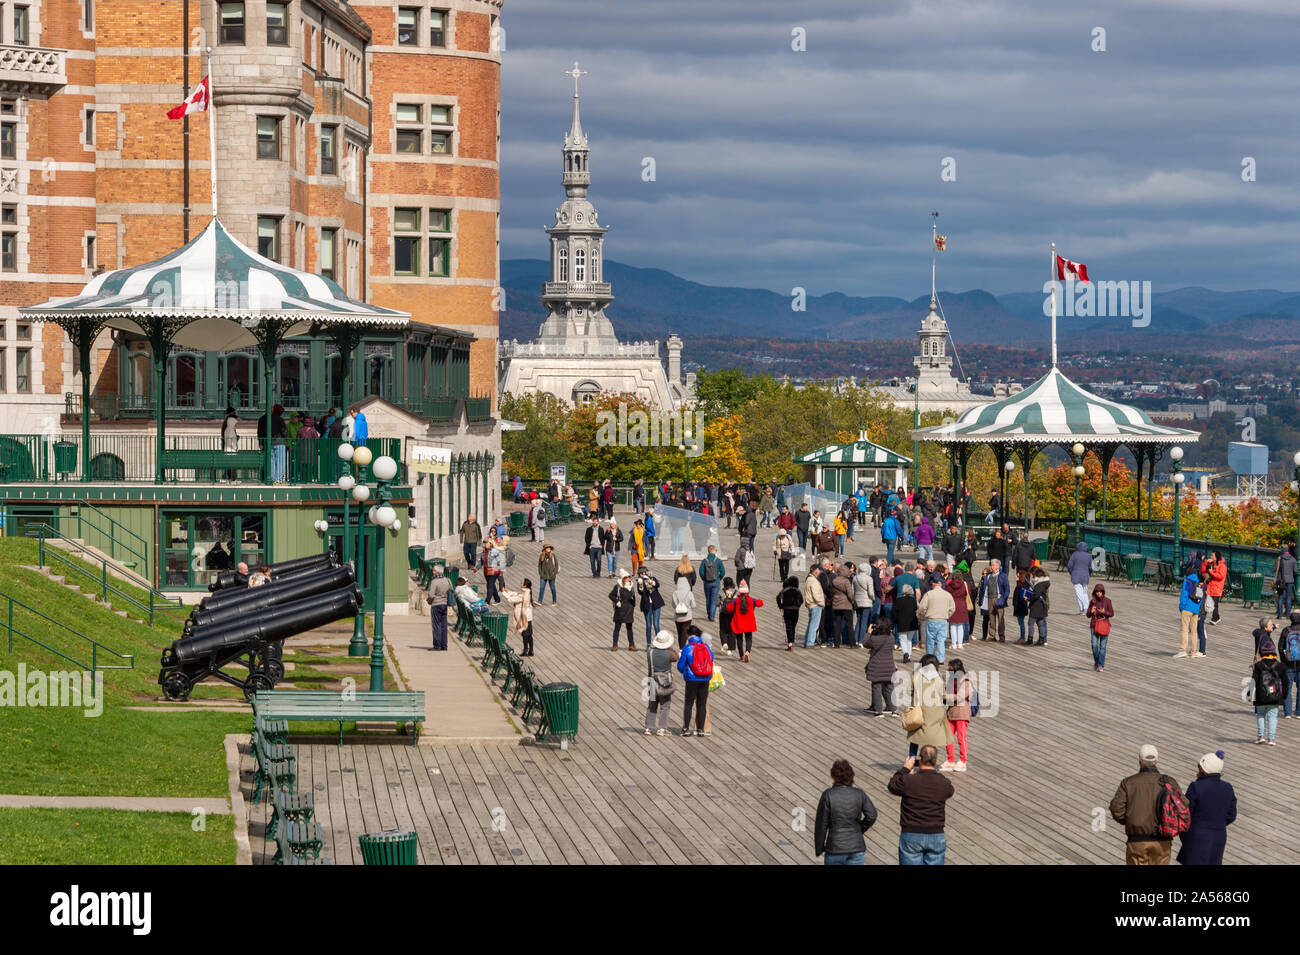 La città di Quebec, Canada - 4 October 2019: turisti camminando sul passaggio pedonale a Chateau Frontenac Foto Stock